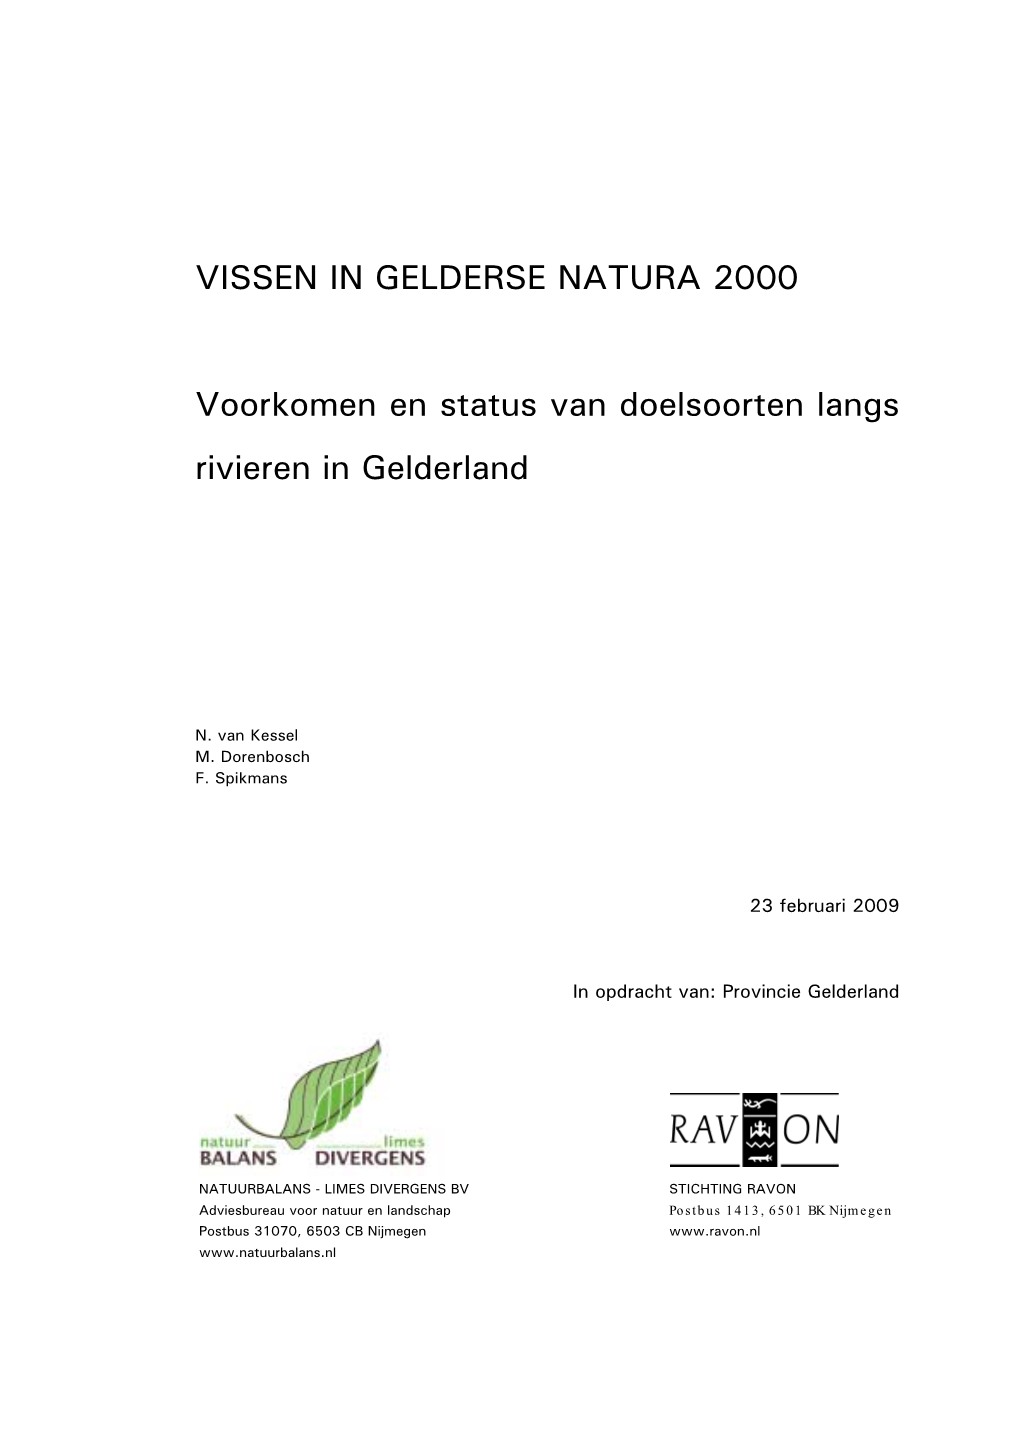 VISSEN in GELDERSE NATURA 2000 Voorkomen En Status Van Doelsoorten Langs Rivieren in Gelderland